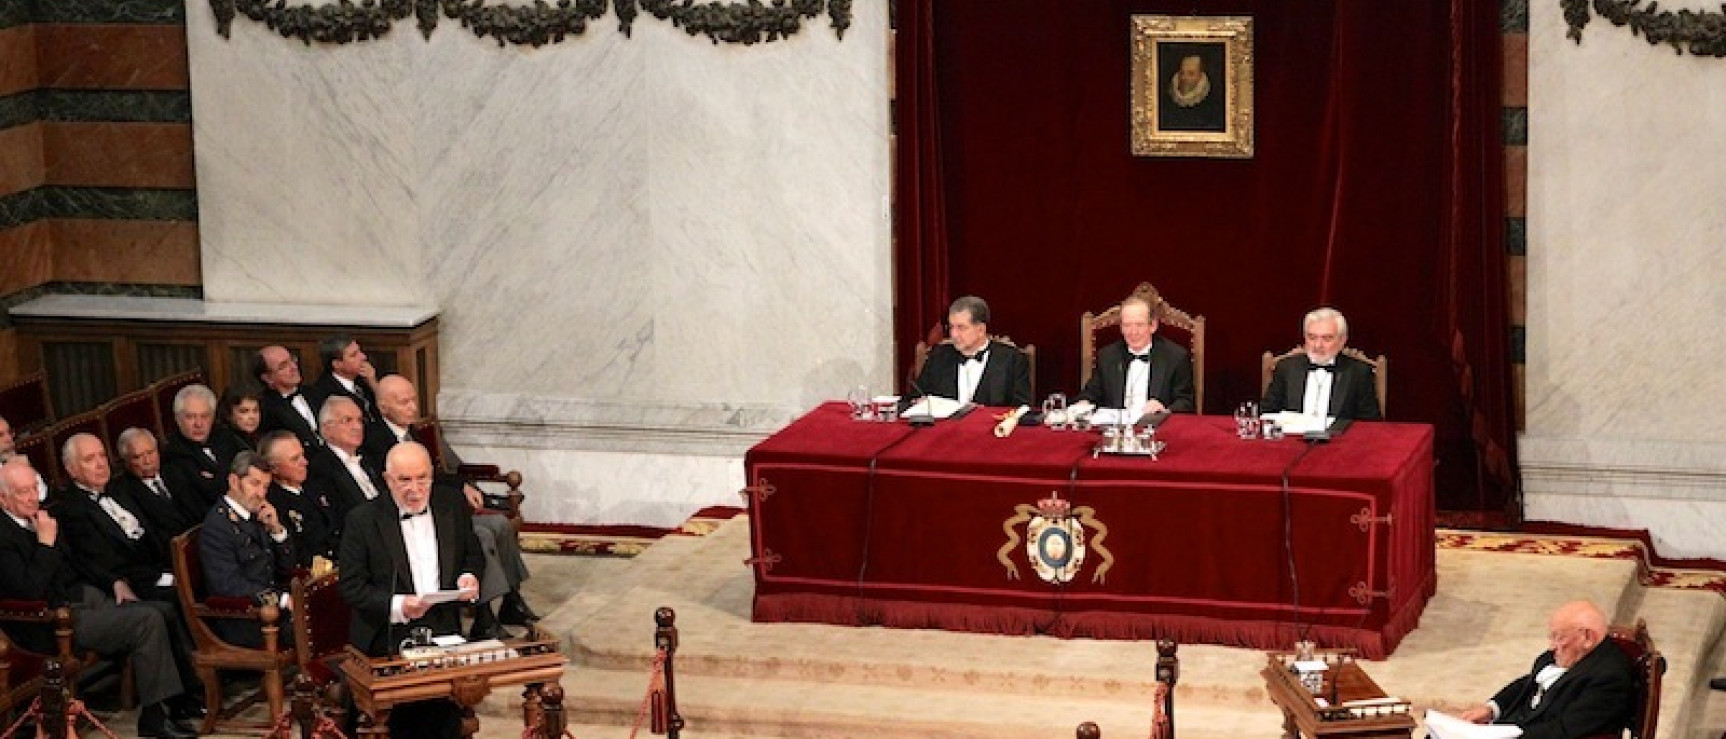 Lectura del discurso de ingreso de Juan Gil, el 30 de octubre de 2011. Fototeca de la RAE.